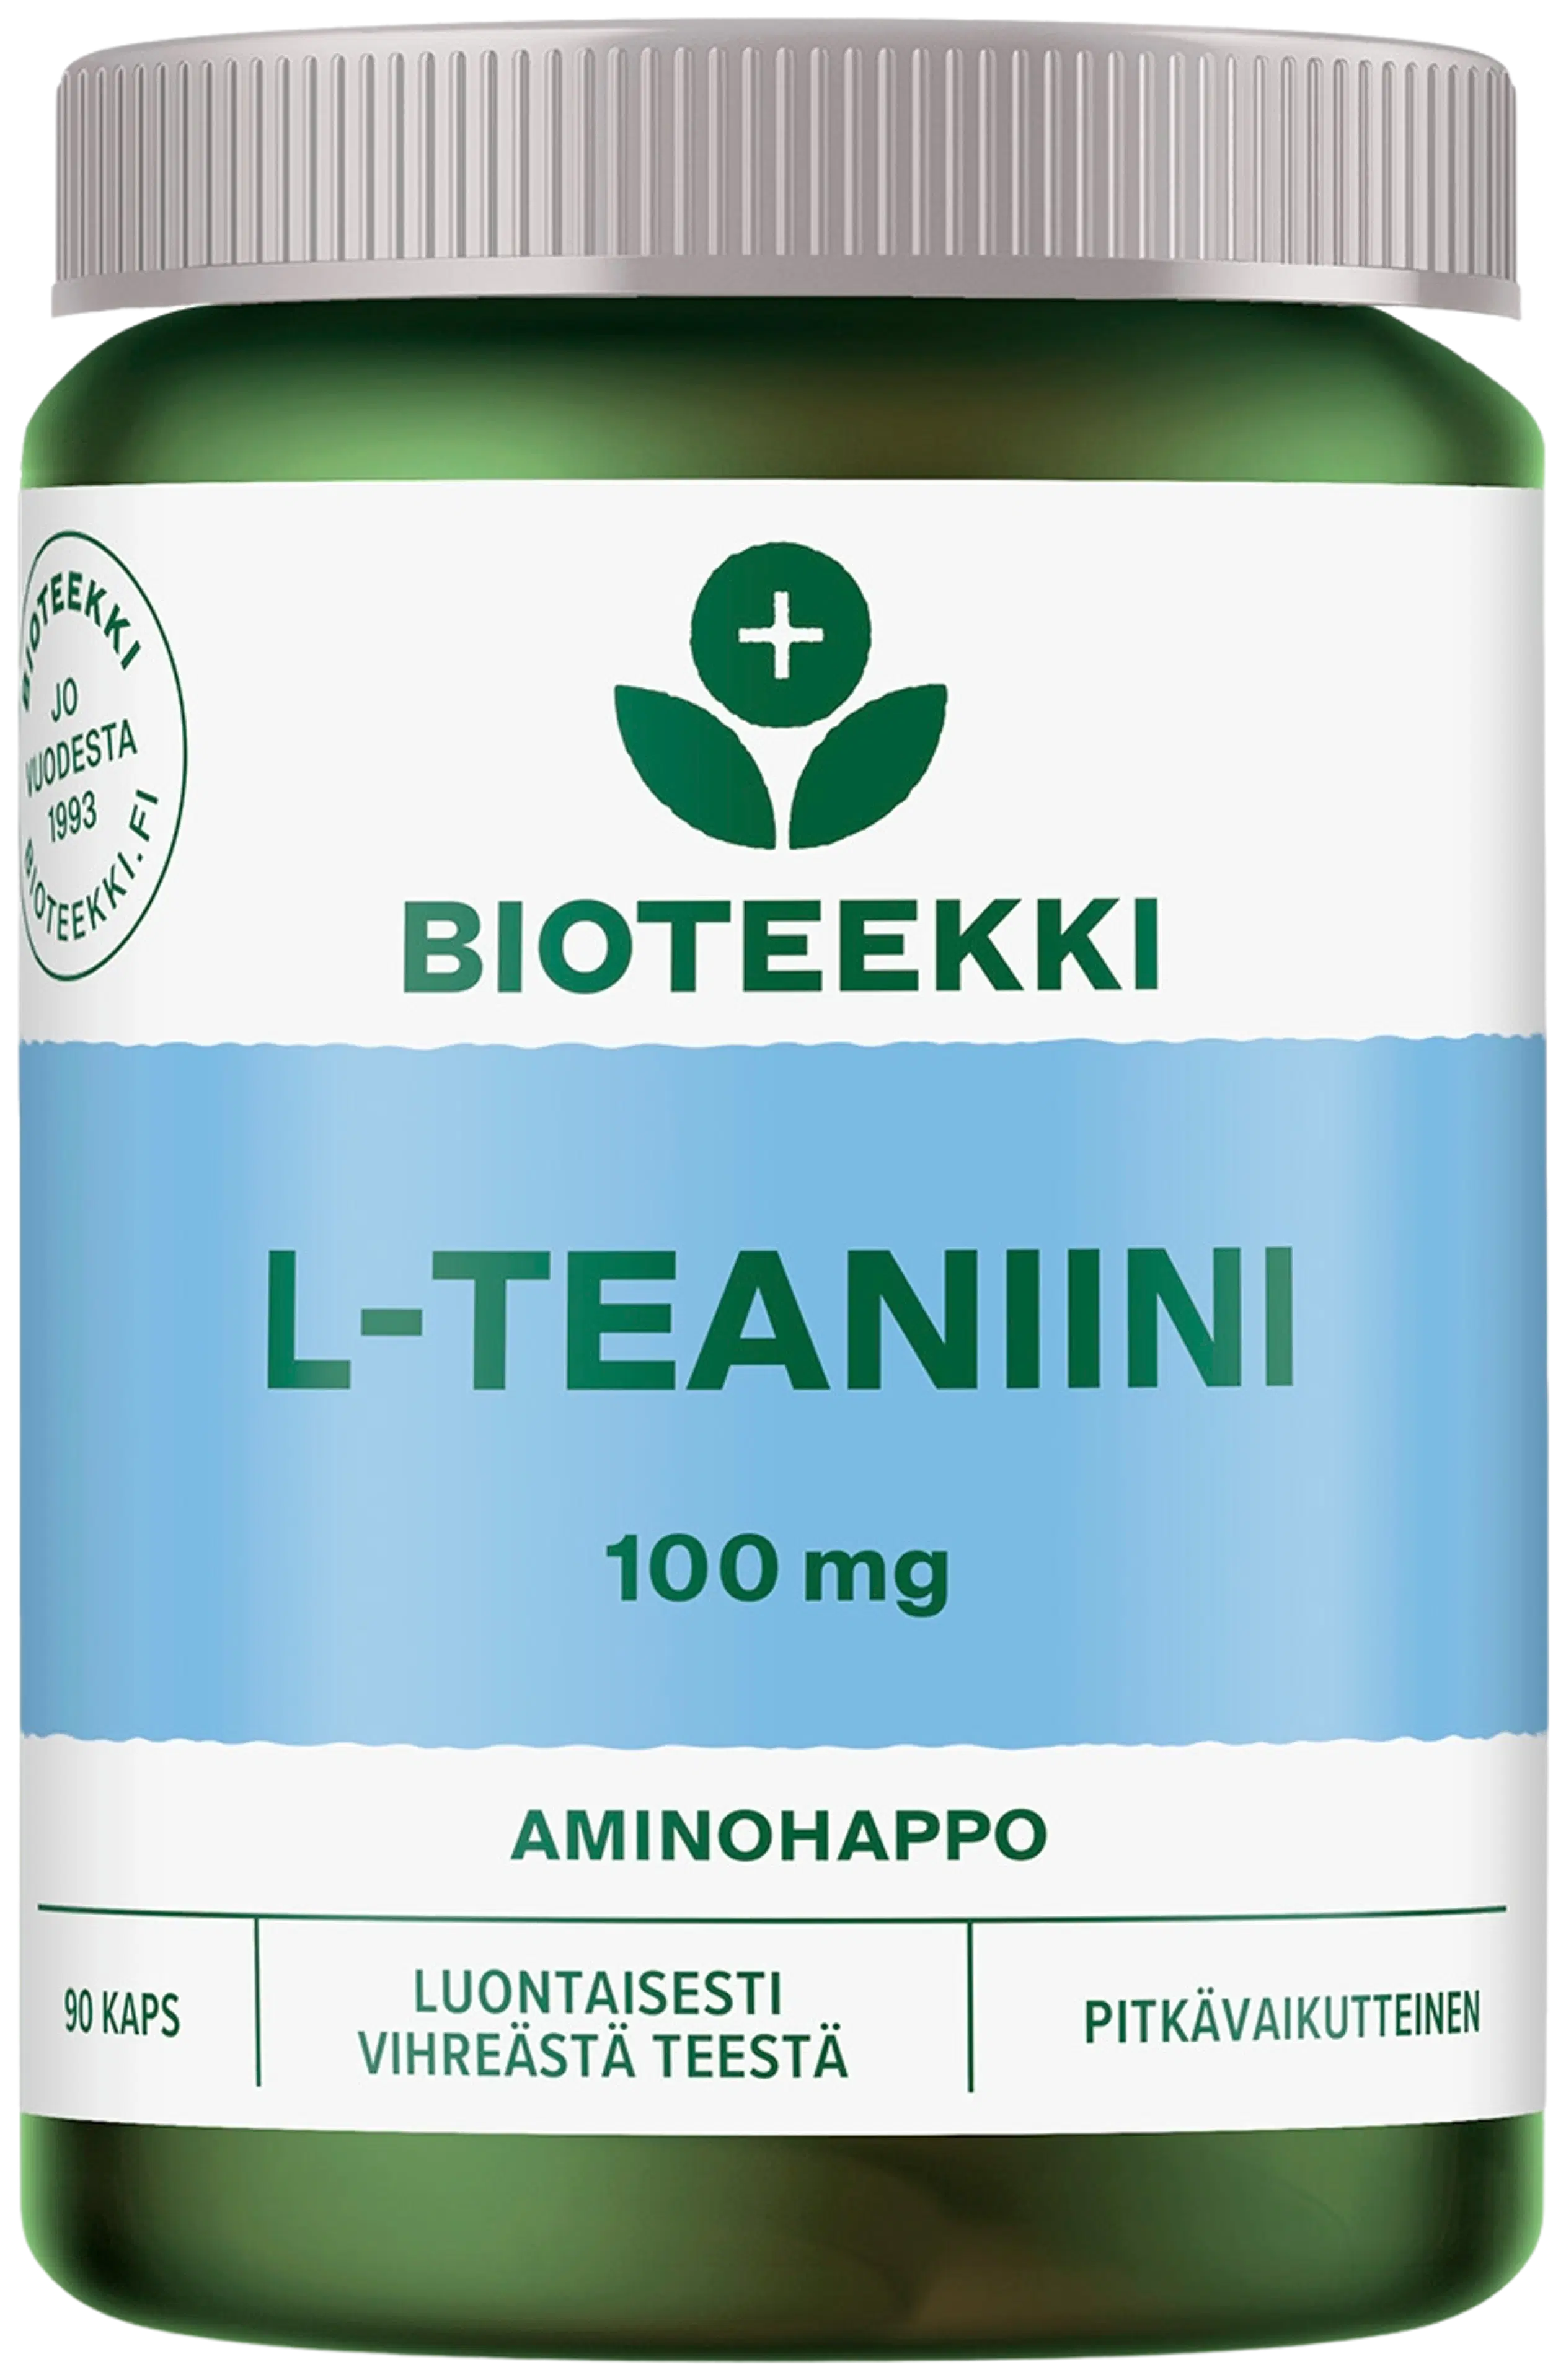 Bioteekki L-Teaniini pitkävaikutteinen ravintolisä 90 kaps.